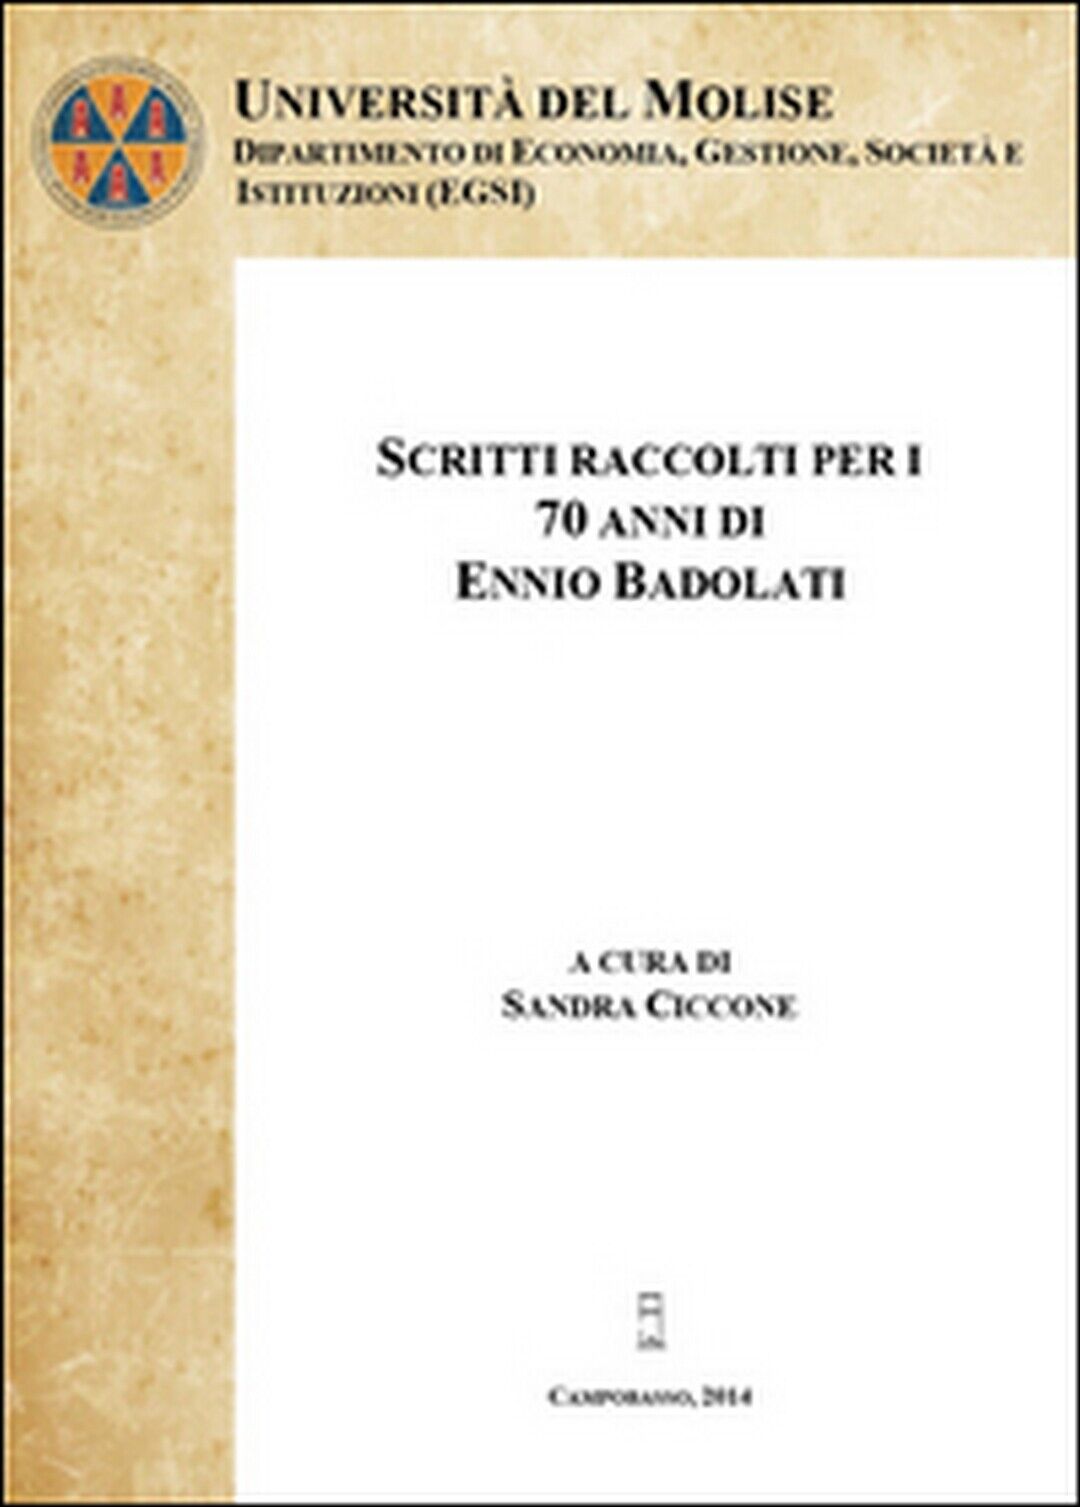 Scritti raccolti per i 70 anni di Ennio Badolati Vol.1 (Ciccone, 2014) libro usato